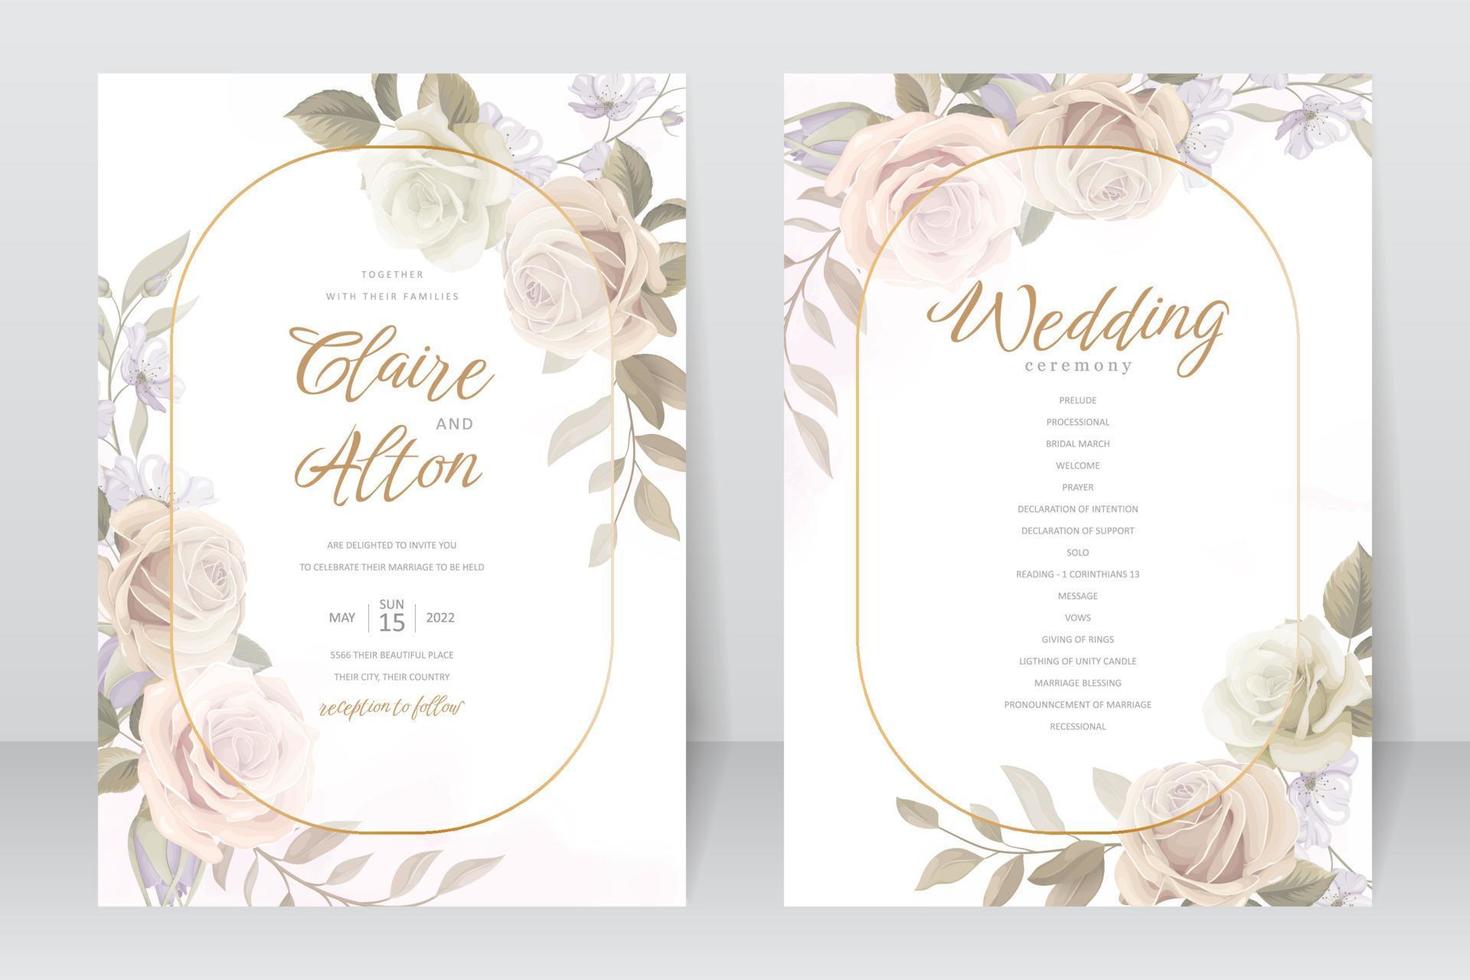 bröllopsinbjudan mall med ros blomma design vektor